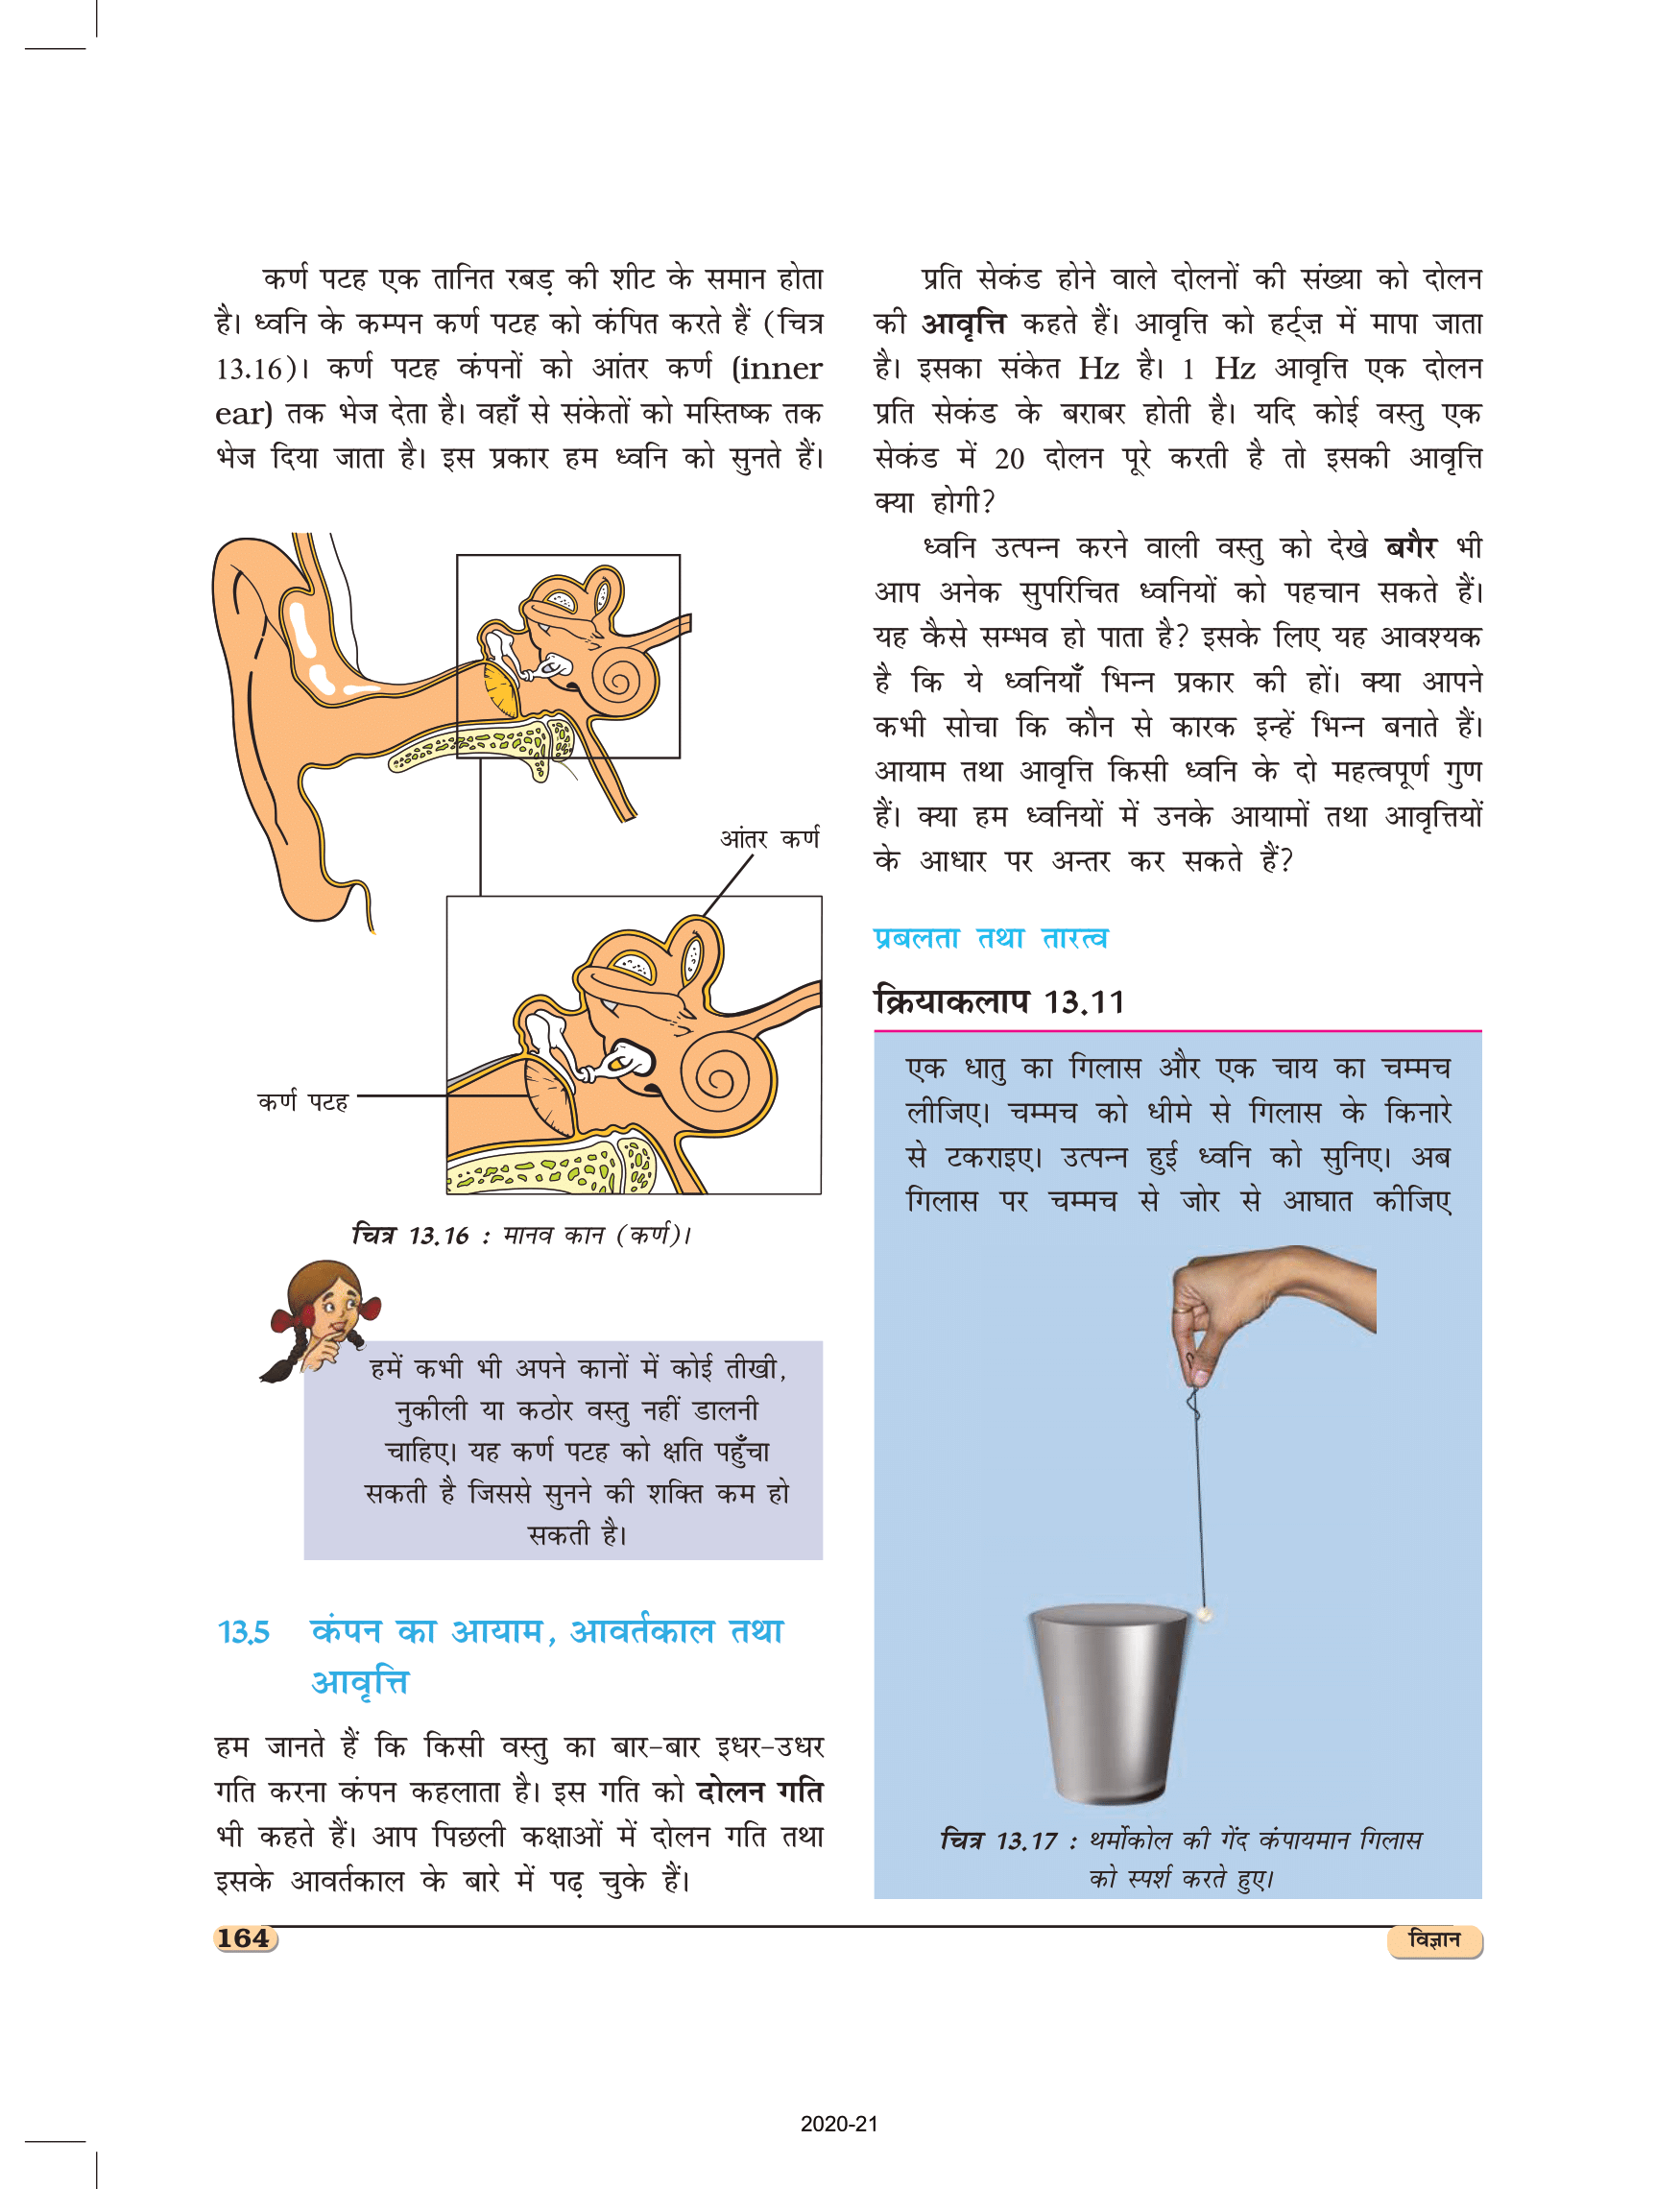 कक्षा 8 विज्ञान अध्याय 13 की पुस्तक